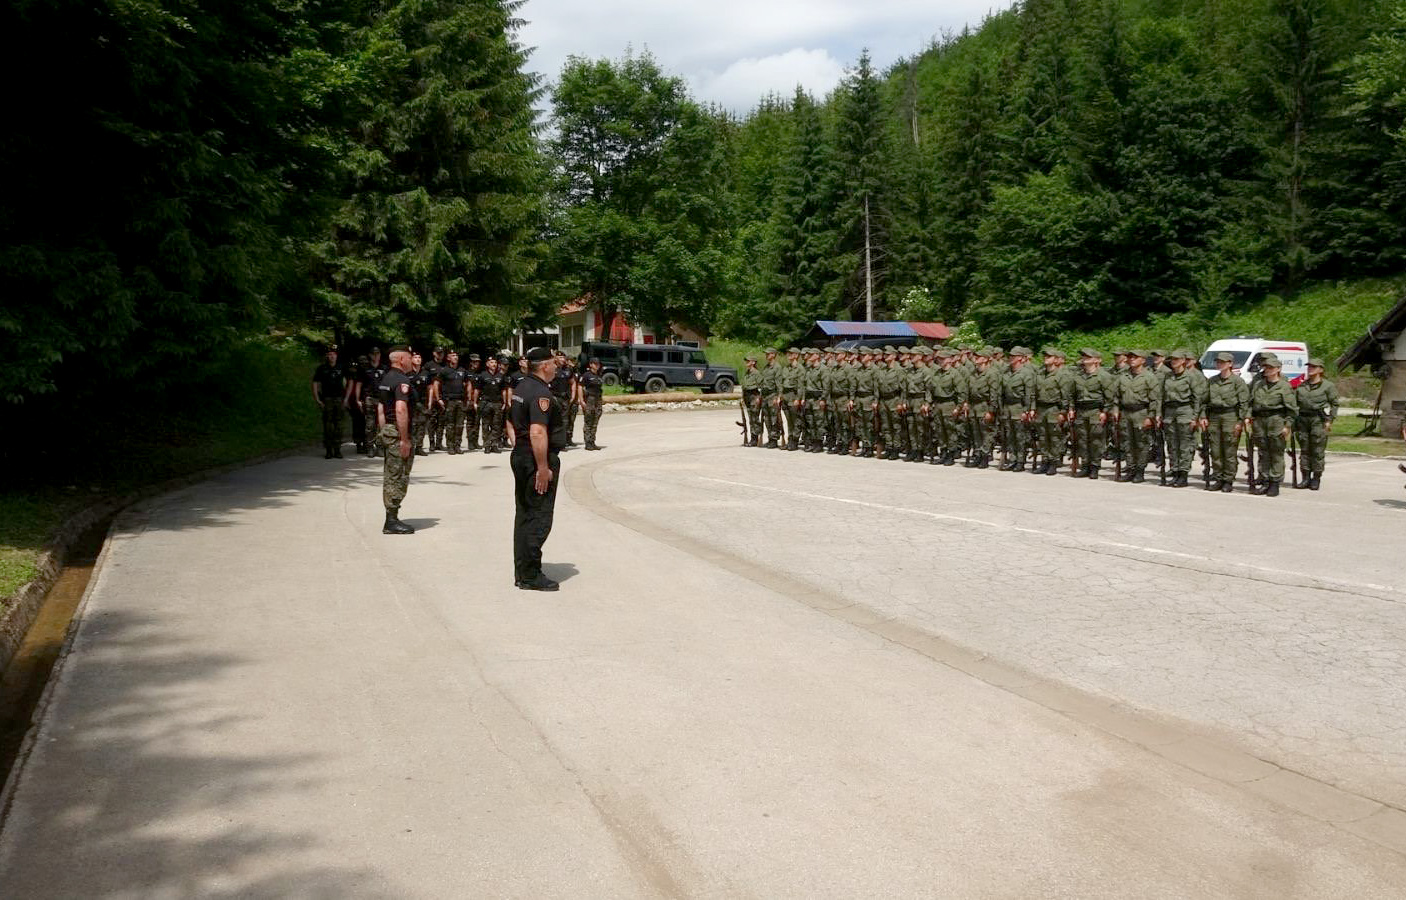 Komandant Žandarmerije general Dejan Luković obišao u Nastavnom centru Jasenovo instruktore i kandidate za prijem u Žandarmeriju